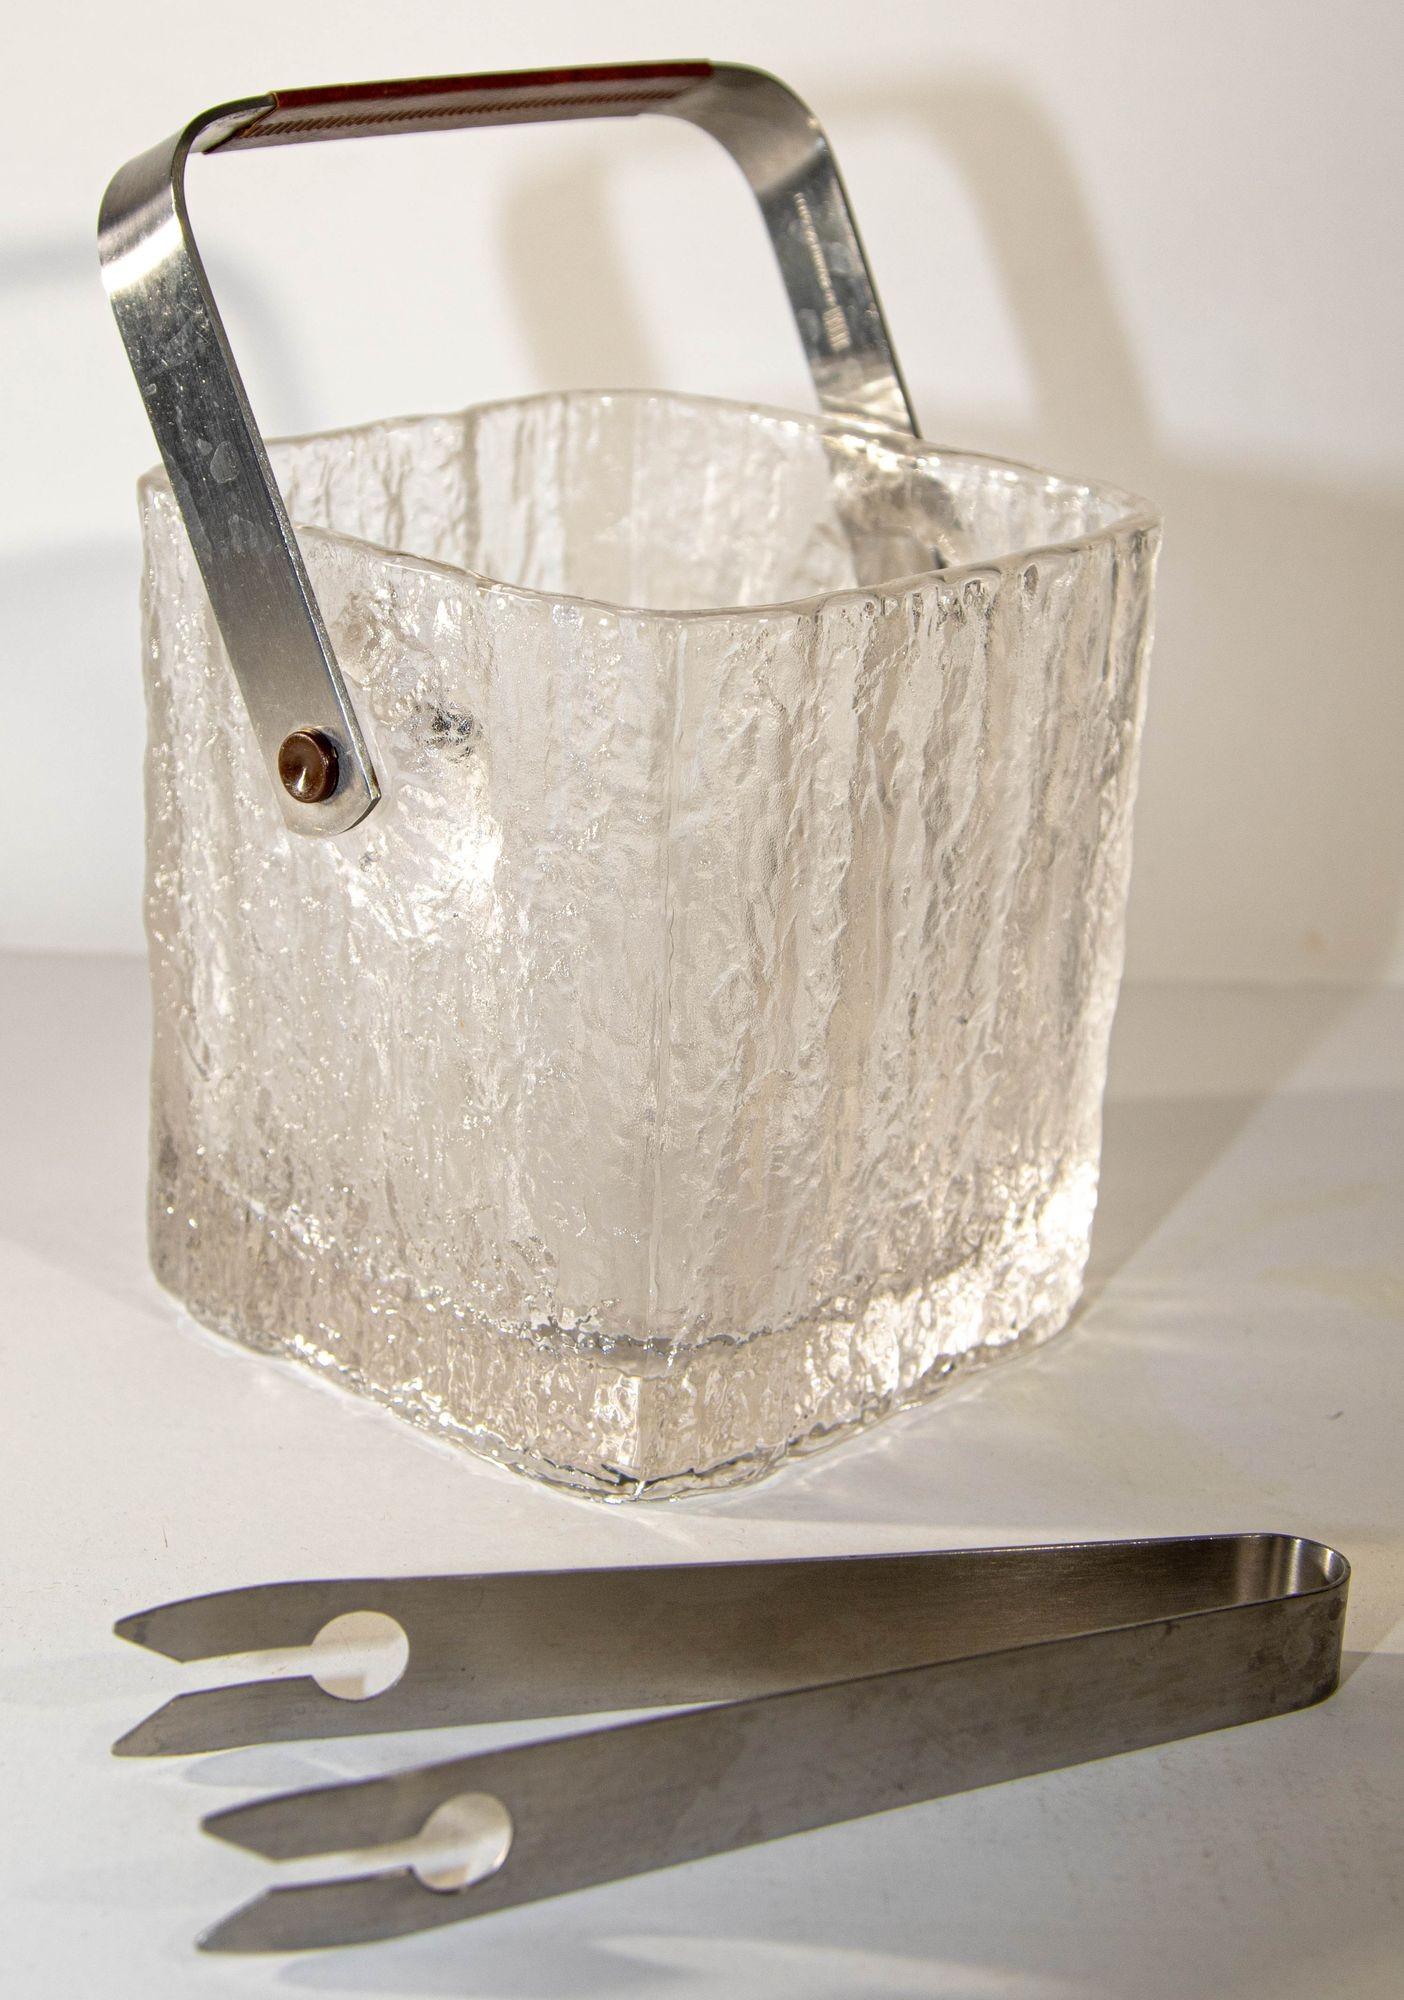 Vintage Mid-Century Modern Hoya Glacier Ice Bucket mit strukturiertem Eisglas, Japan, CIRCA 1960er Jahre.
Der in den 1960er Jahren von der japanischen Marke Hoya hergestellte japanische Eiskübel im Mid-Century-Modern-Stil hat ein schweres,